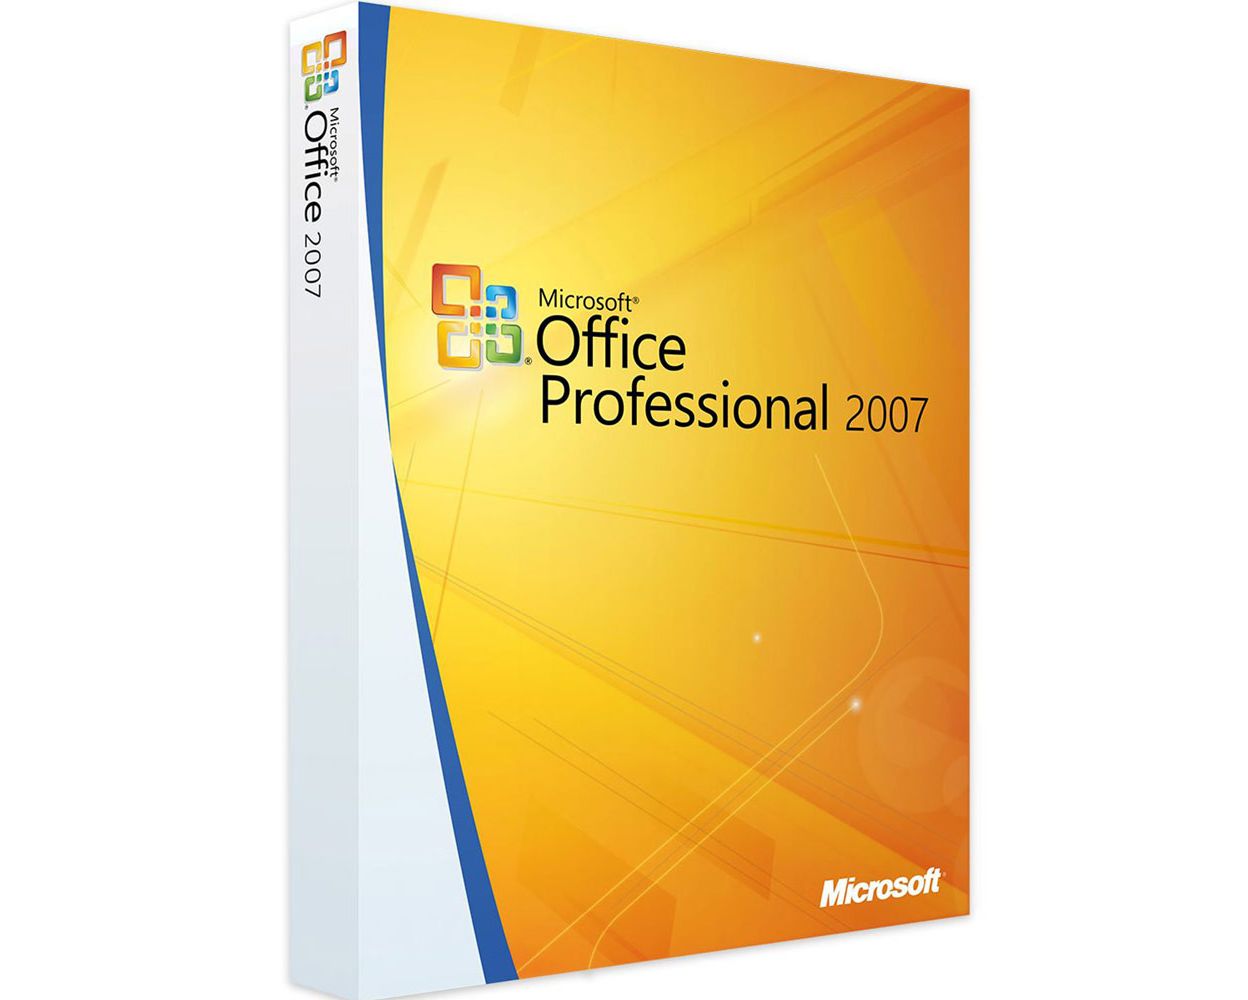 Compra la Licencia de Office 2007 Professional a Precio Accesible